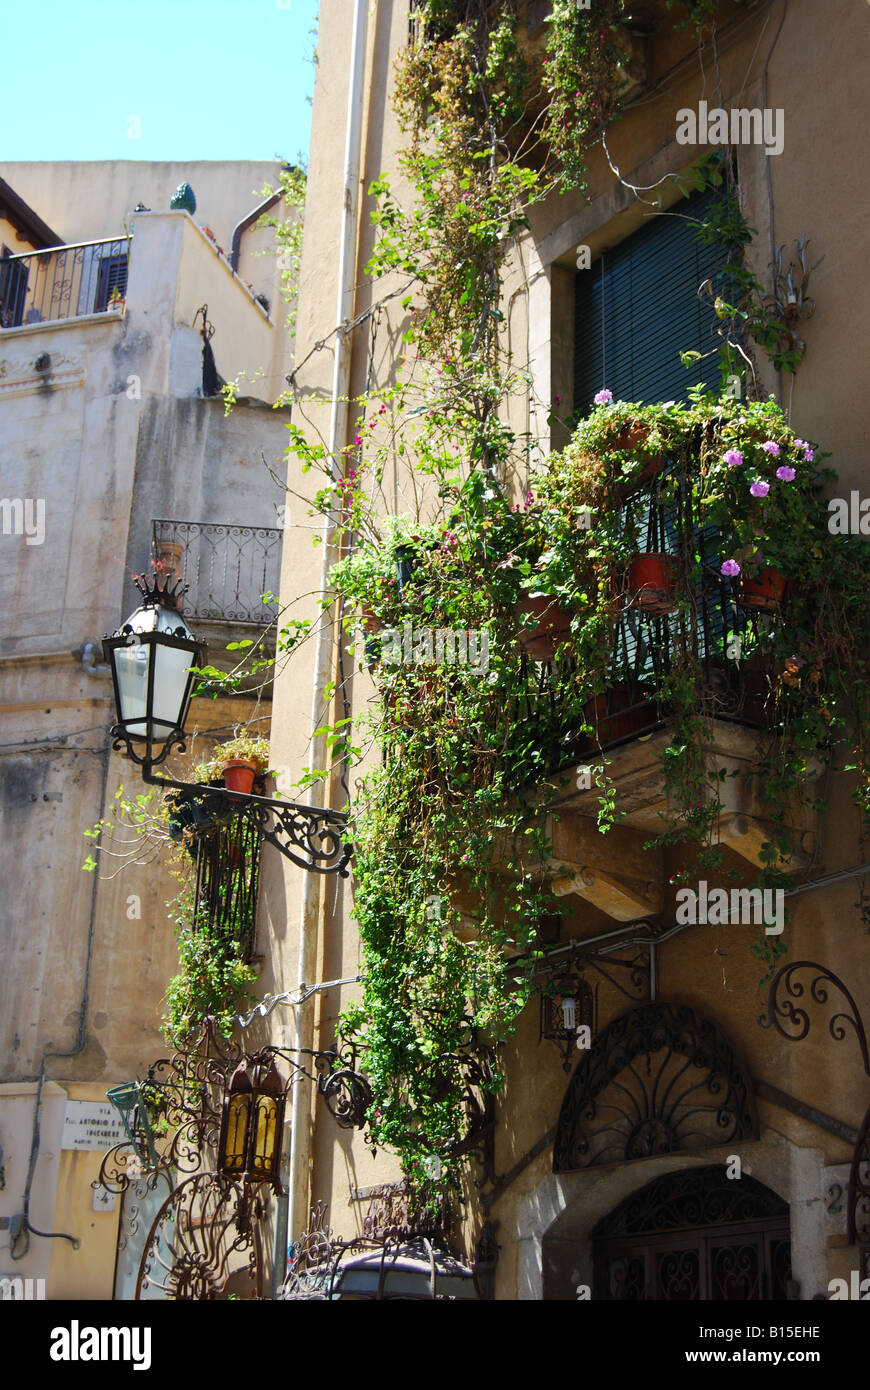 Balcony with flowers, Corso Umberto I, Taormina, Messina Province, Sicily, Italy Stock Photo